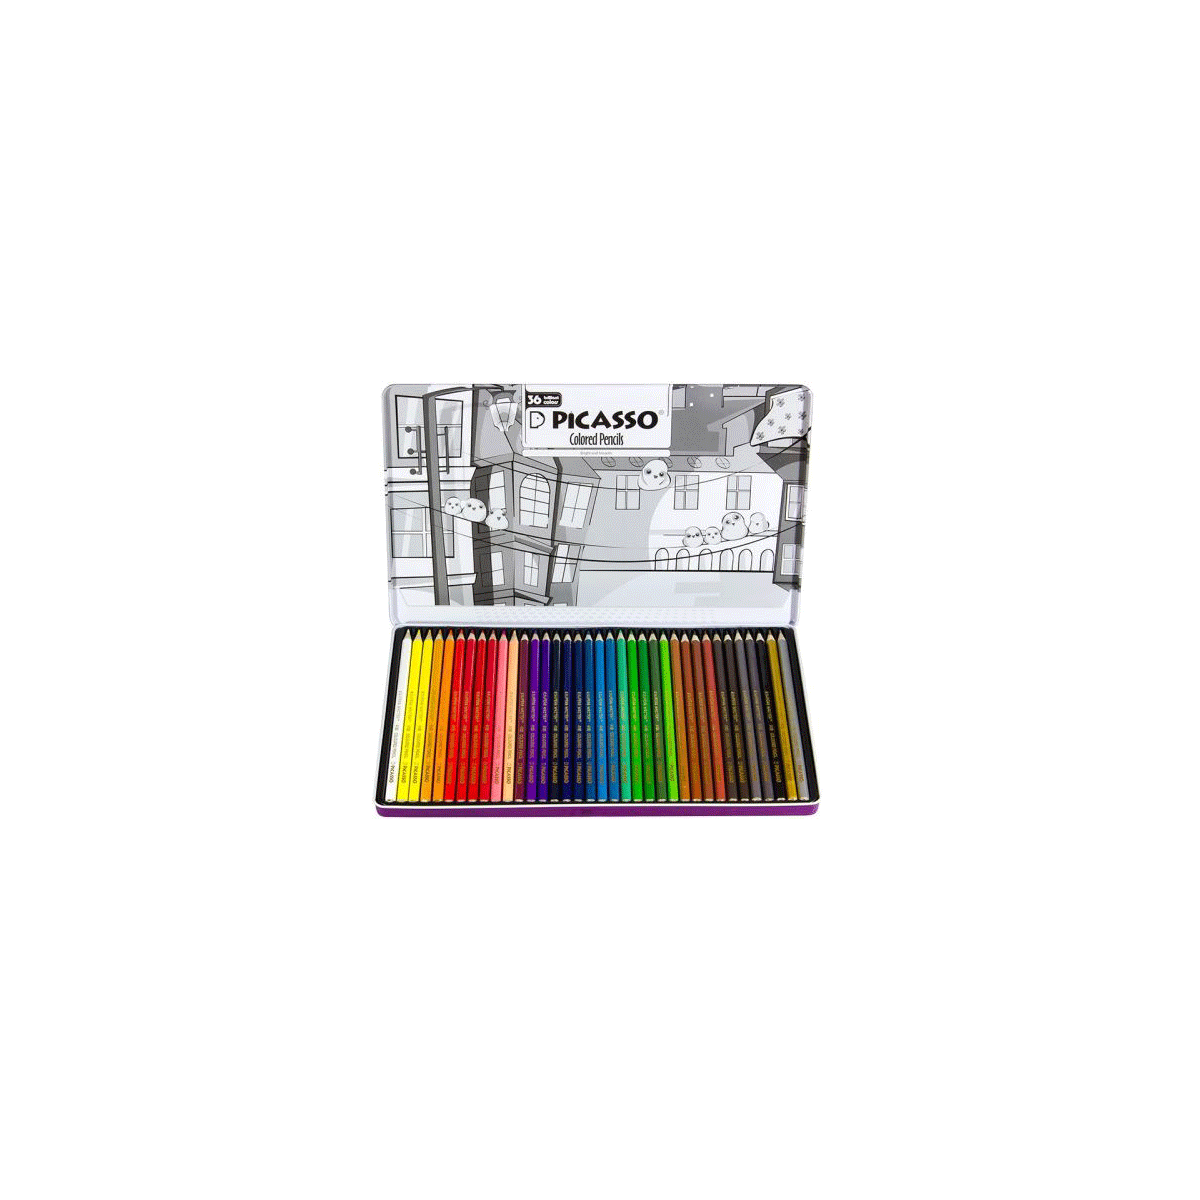  مداد رنگی 36 رنگ جعبه فلزی پیکاسو 